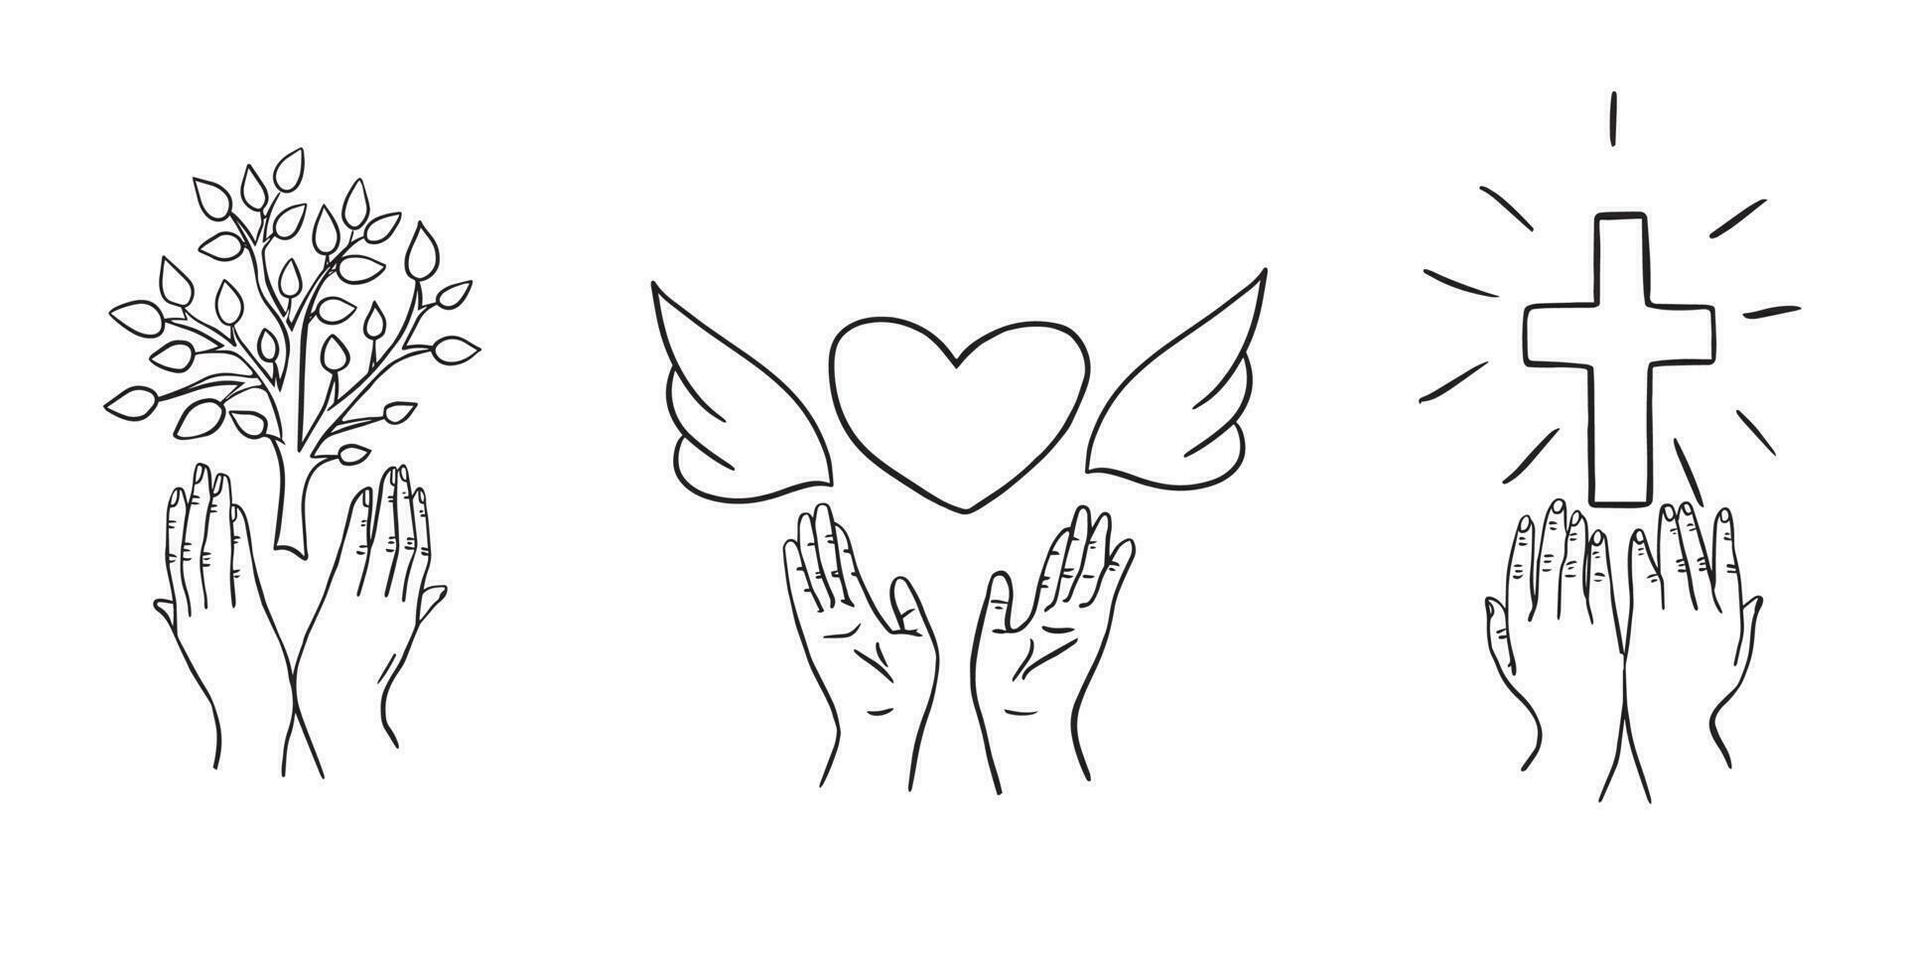 mano dibujado símbolo de esperanza, fe y amor.vector ilustracion.manos participación corazón, cruzar y árbol garabatear. vector